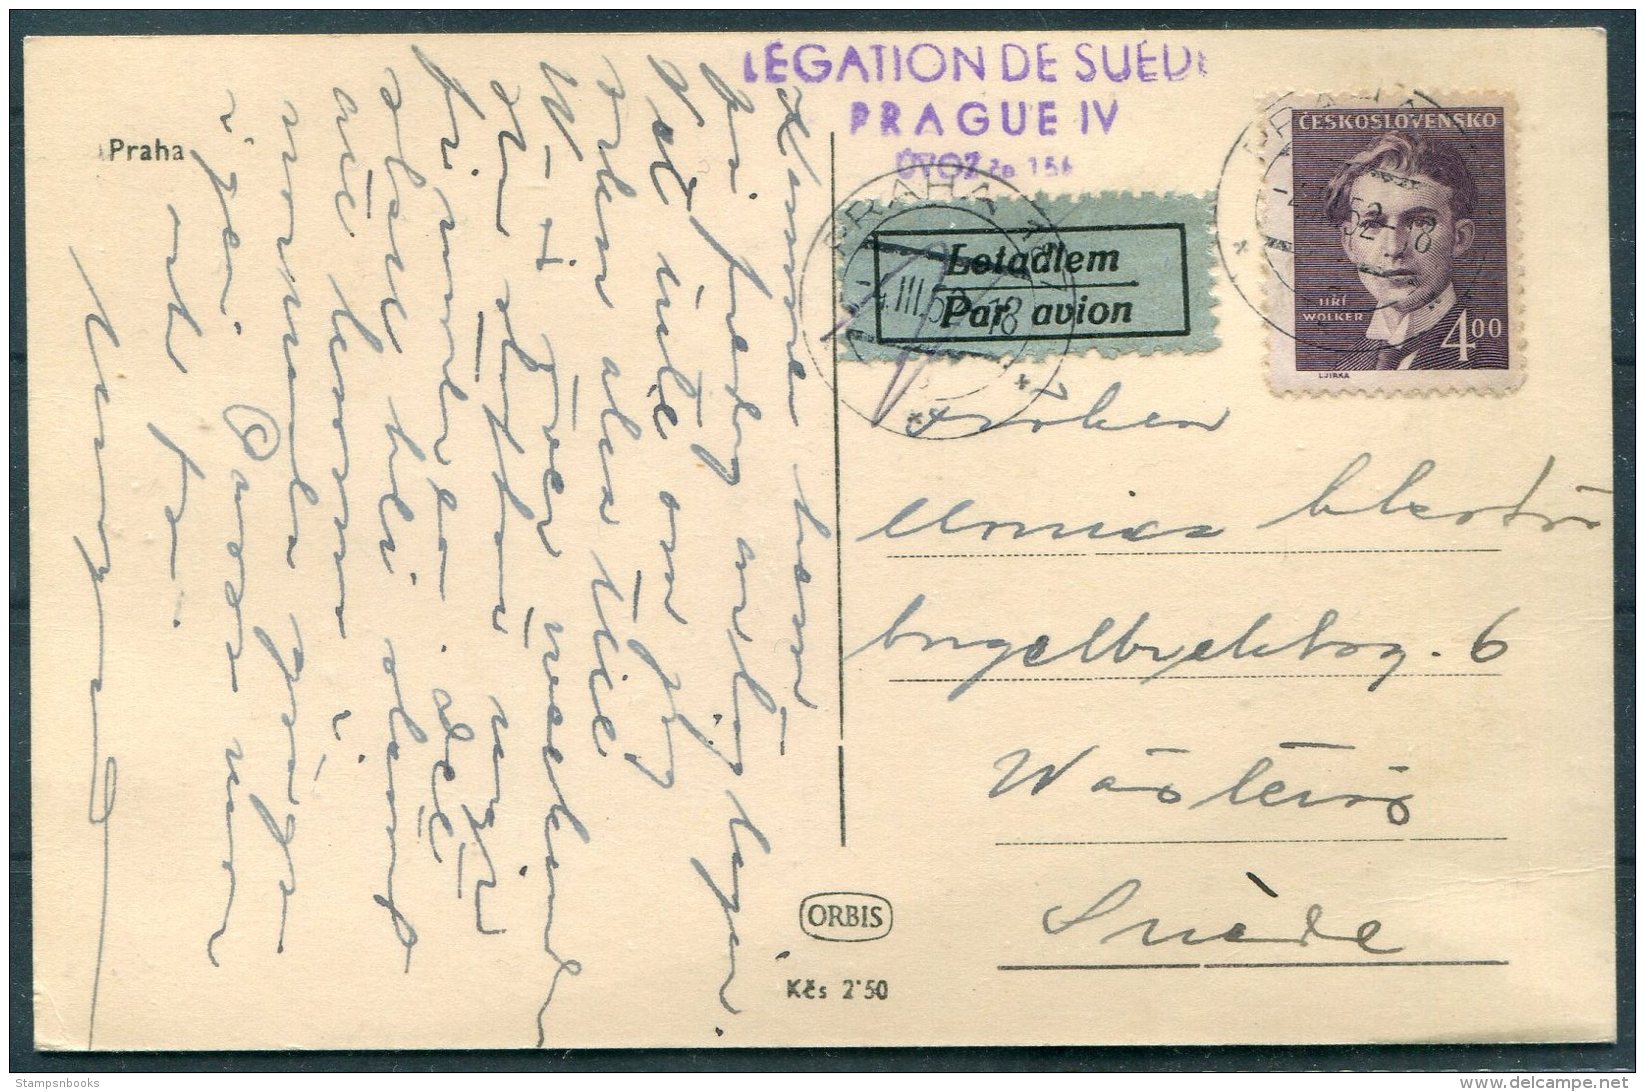 1952 Praha Prague Postcard Airmail Legation De Suede, Swedish Legation - Sweden - Covers & Documents